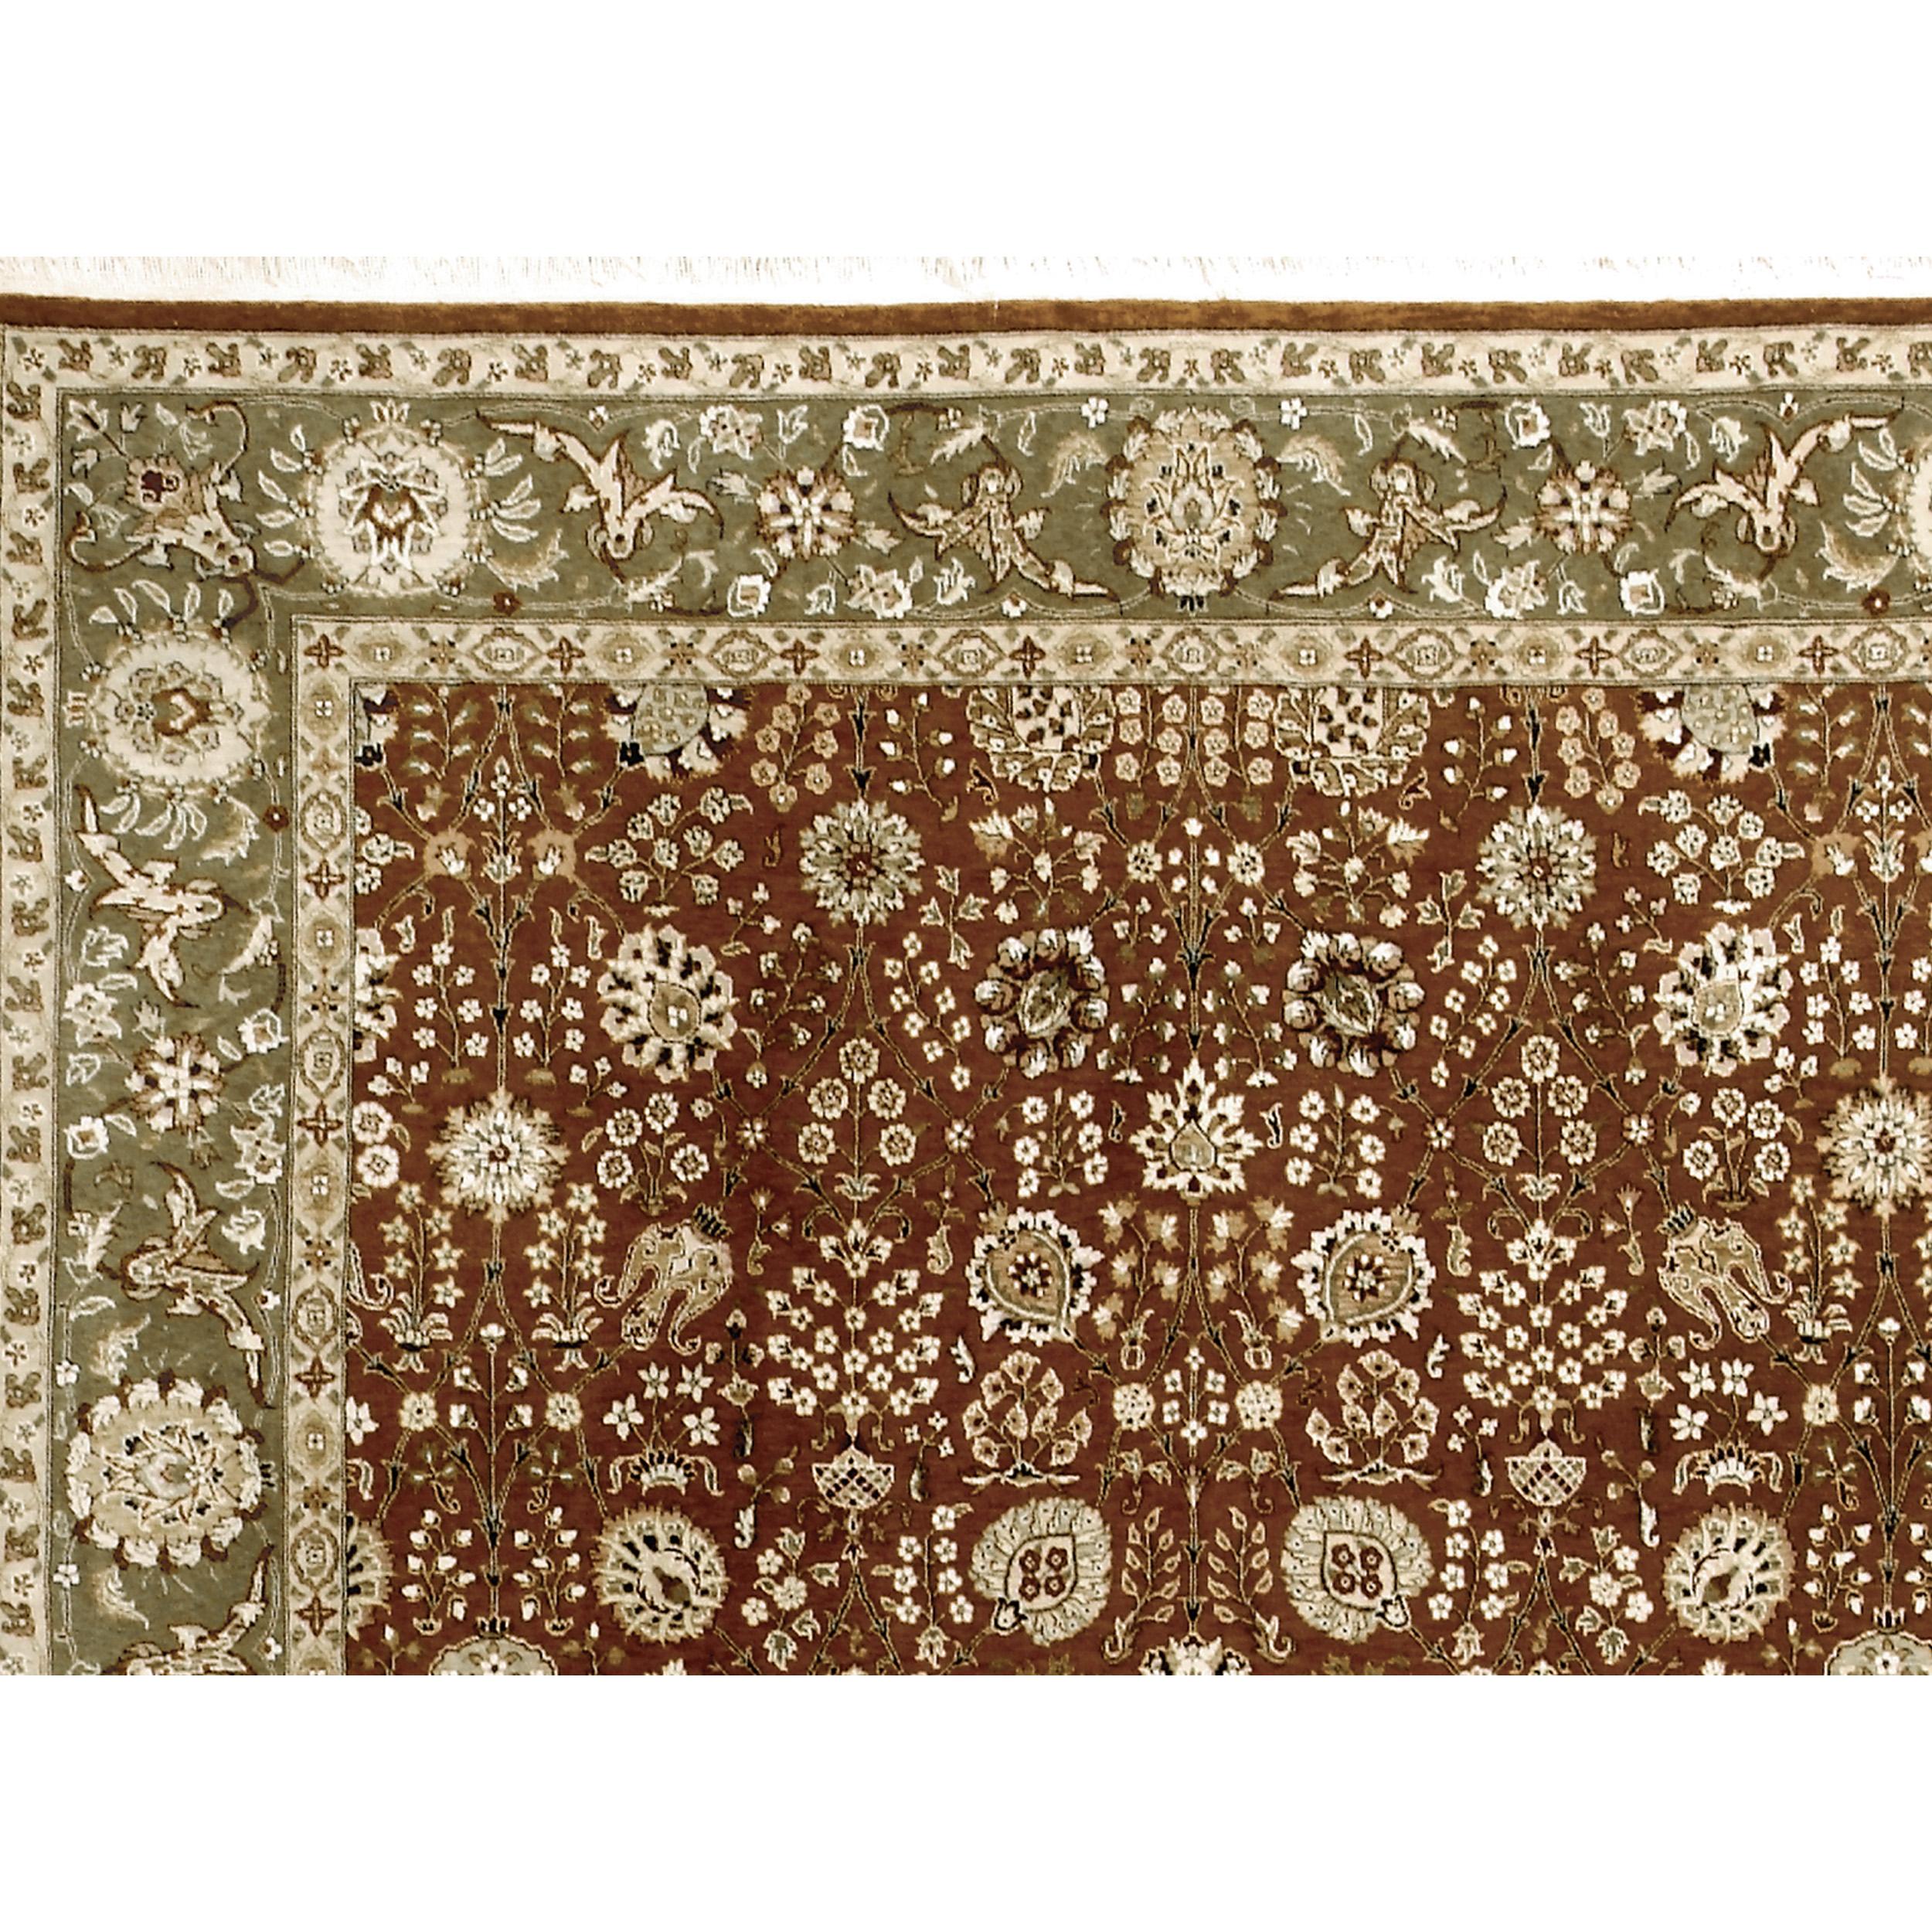 Dieses Teppichdesign basiert auf antiken Perserteppichen, verwendet aber eine moderne Farbpalette. Das Hauptmerkmal dieses Teppichs ist der auffällige Abrash (Farbwechsel), eine neue Technik des Webens zwischen zwei Farbtönen, die ein antikes